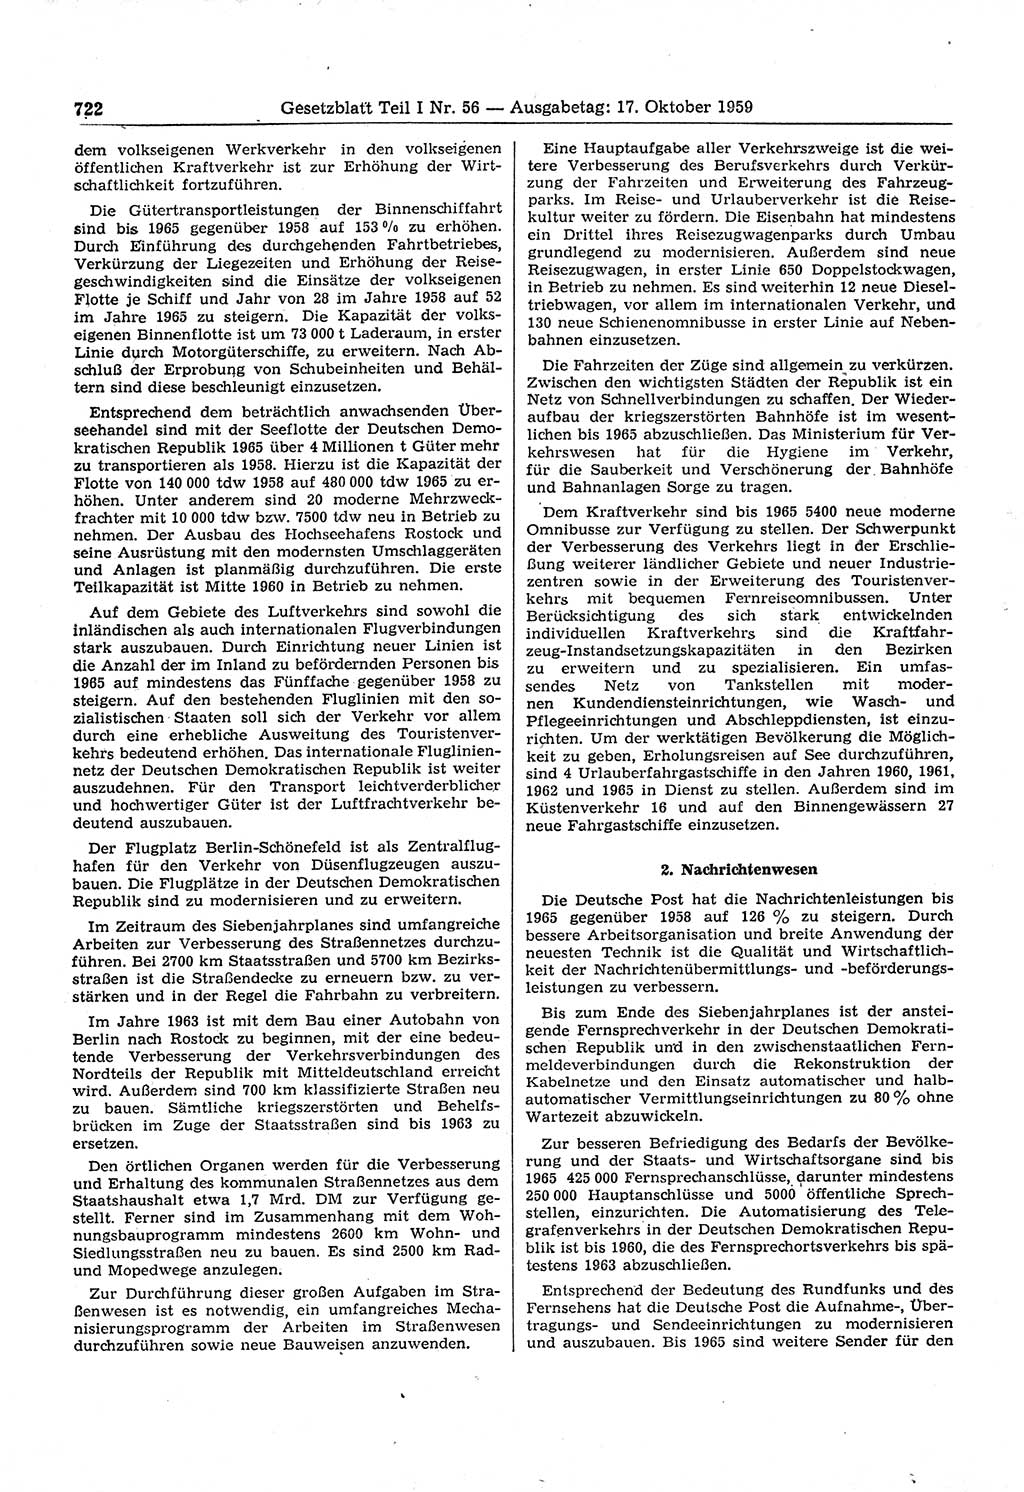 Gesetzblatt (GBl.) der Deutschen Demokratischen Republik (DDR) Teil Ⅰ 1959, Seite 722 (GBl. DDR Ⅰ 1959, S. 722)